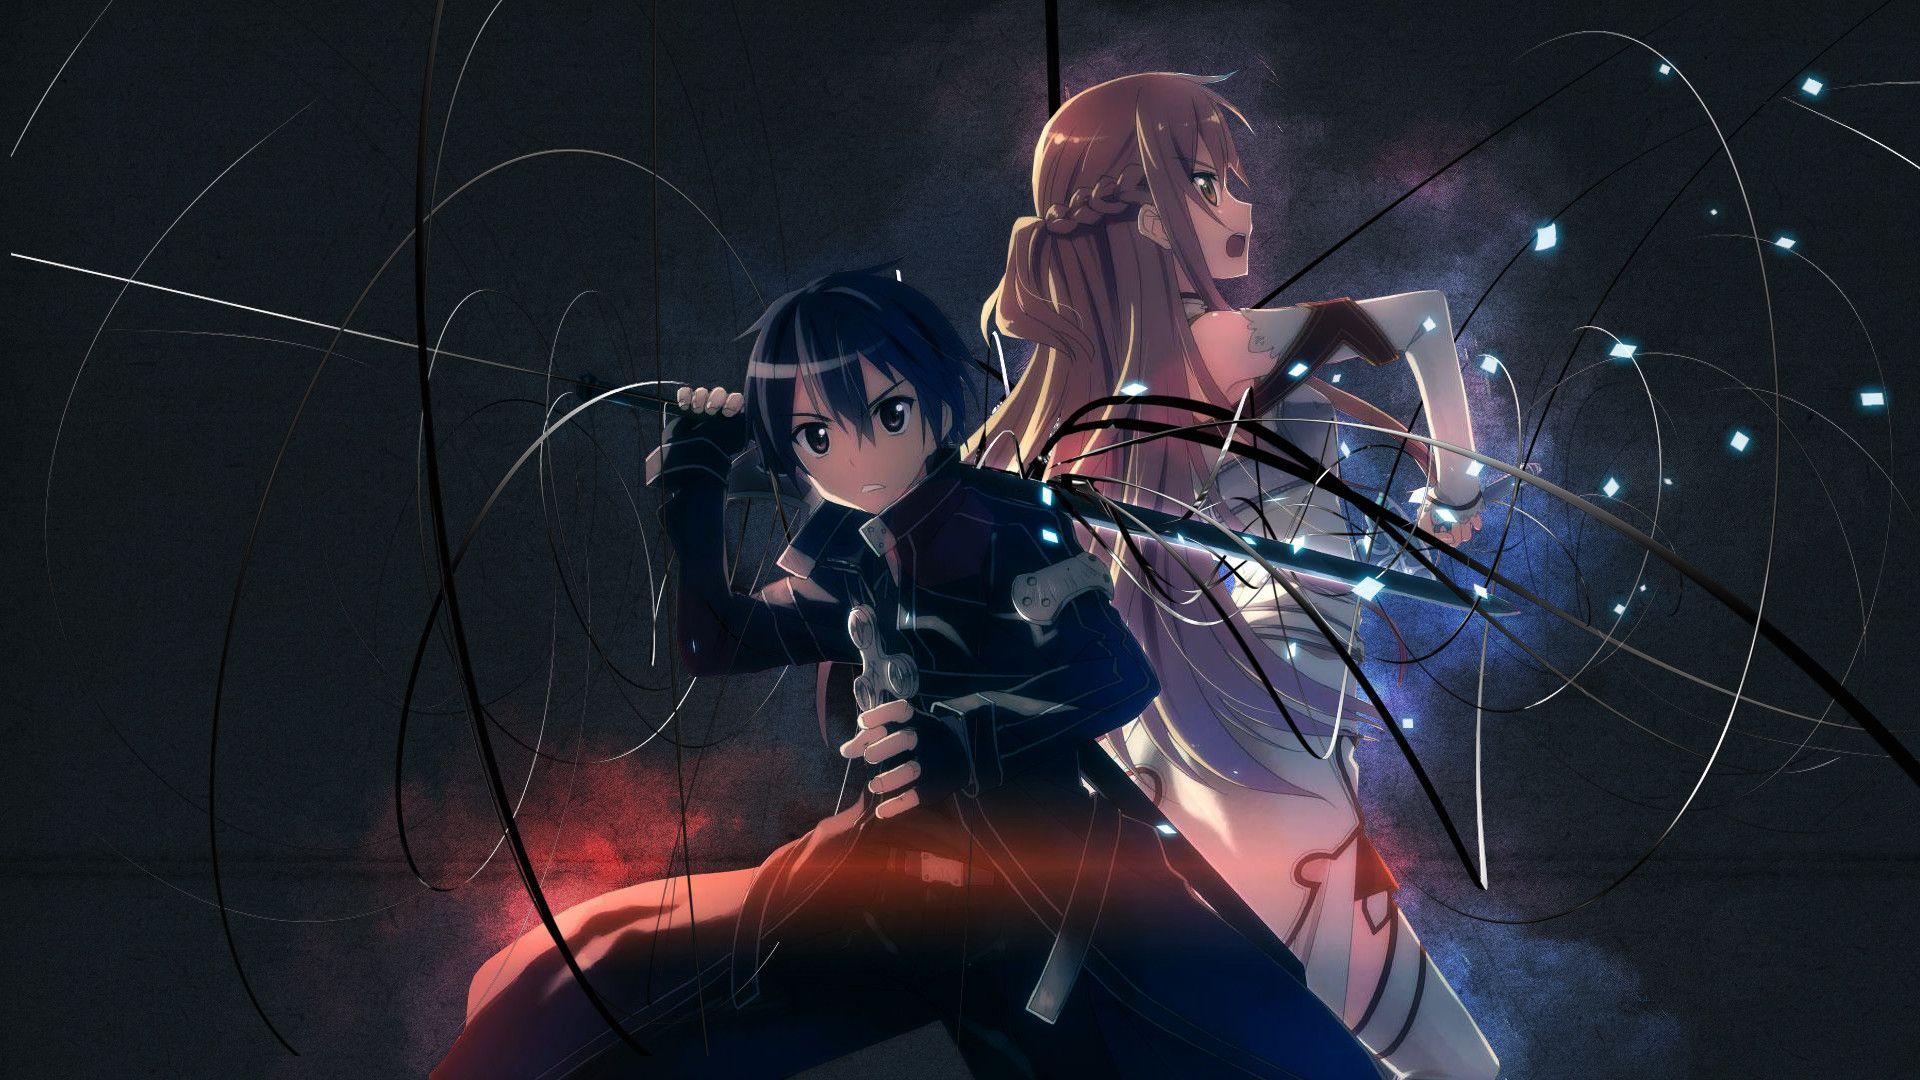 Anime Sword Art Online HD Wallpaper by 小半みるく